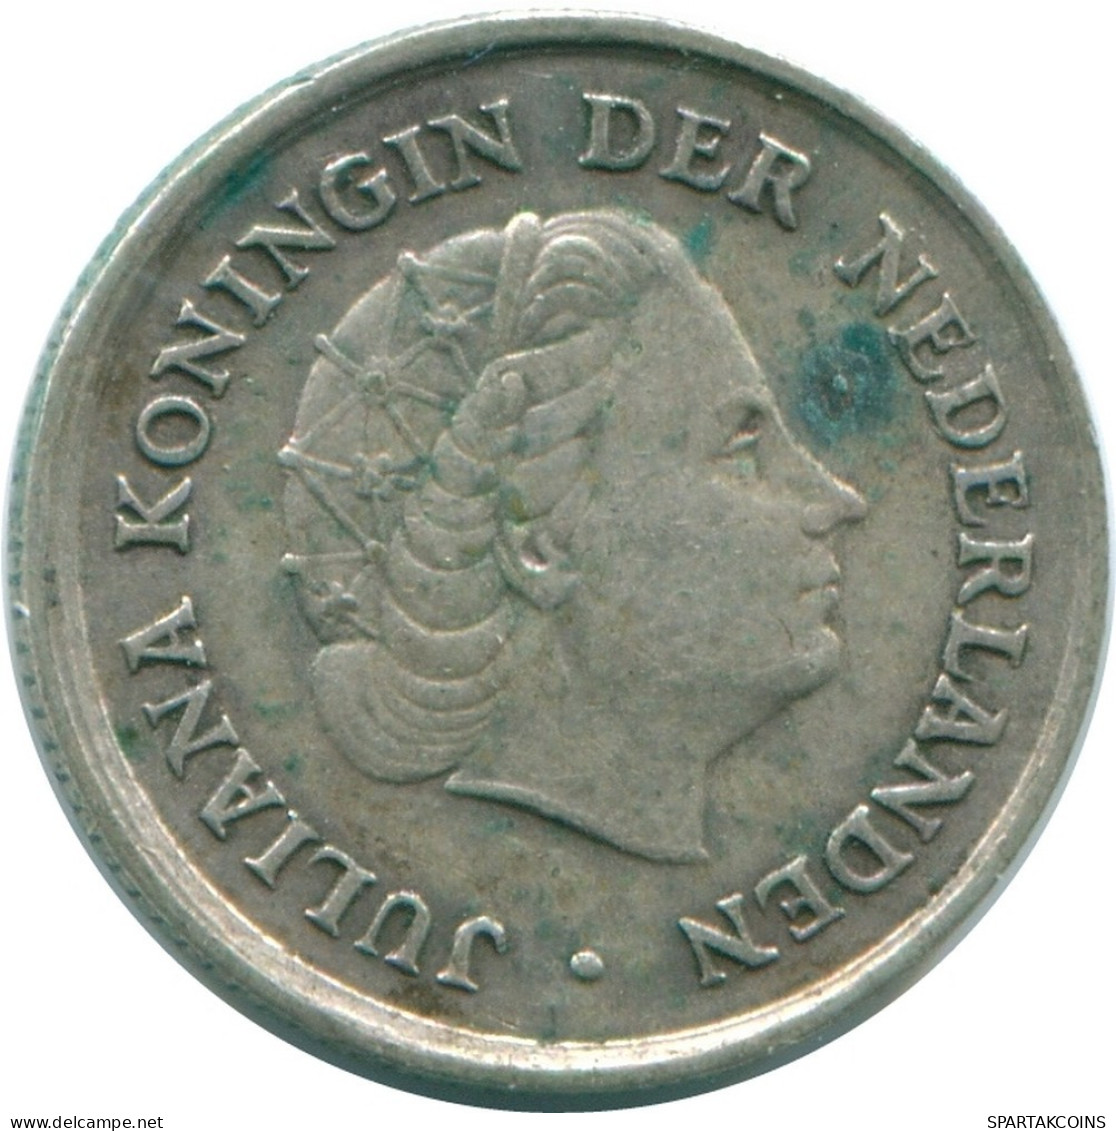 1/10 GULDEN 1966 NIEDERLÄNDISCHE ANTILLEN SILBER Koloniale Münze #NL12840.3.D.A - Antilles Néerlandaises